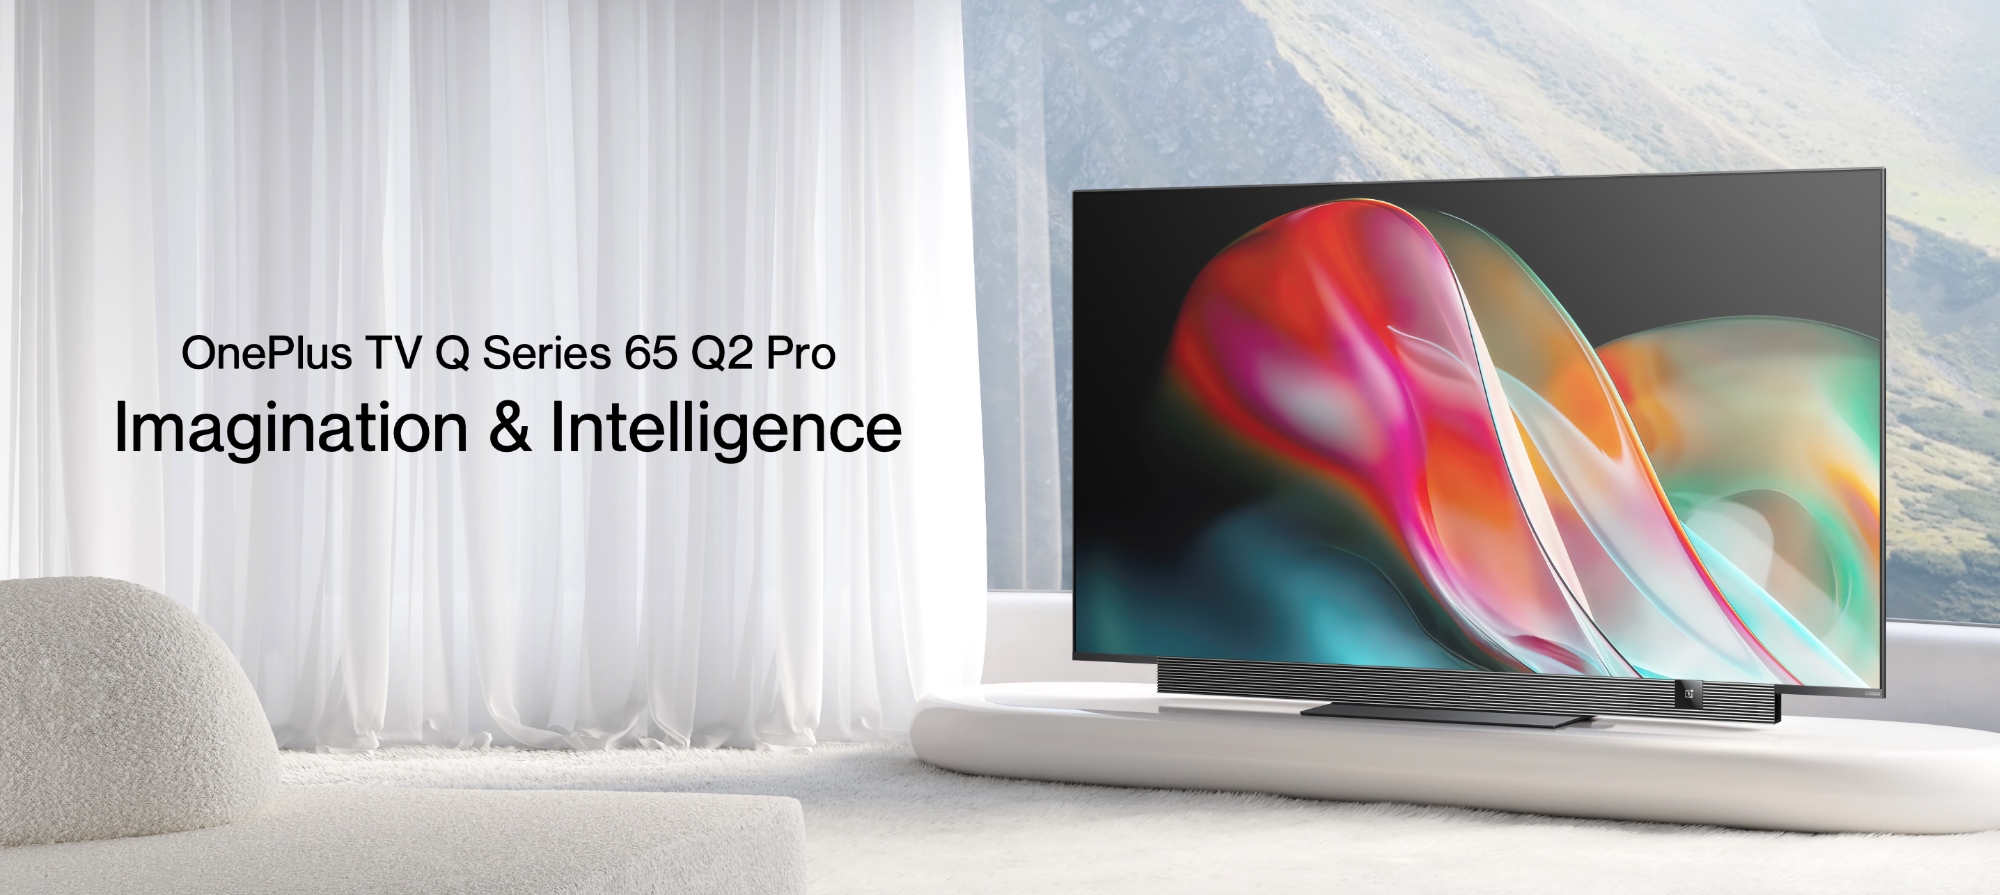 OnePlus TV 65 Q2 Pro: pantalla 4K QLED a 120 Hz, altavoces de 70 W, compatibilidad con Dolby Vision y Android TV por 1209 €.